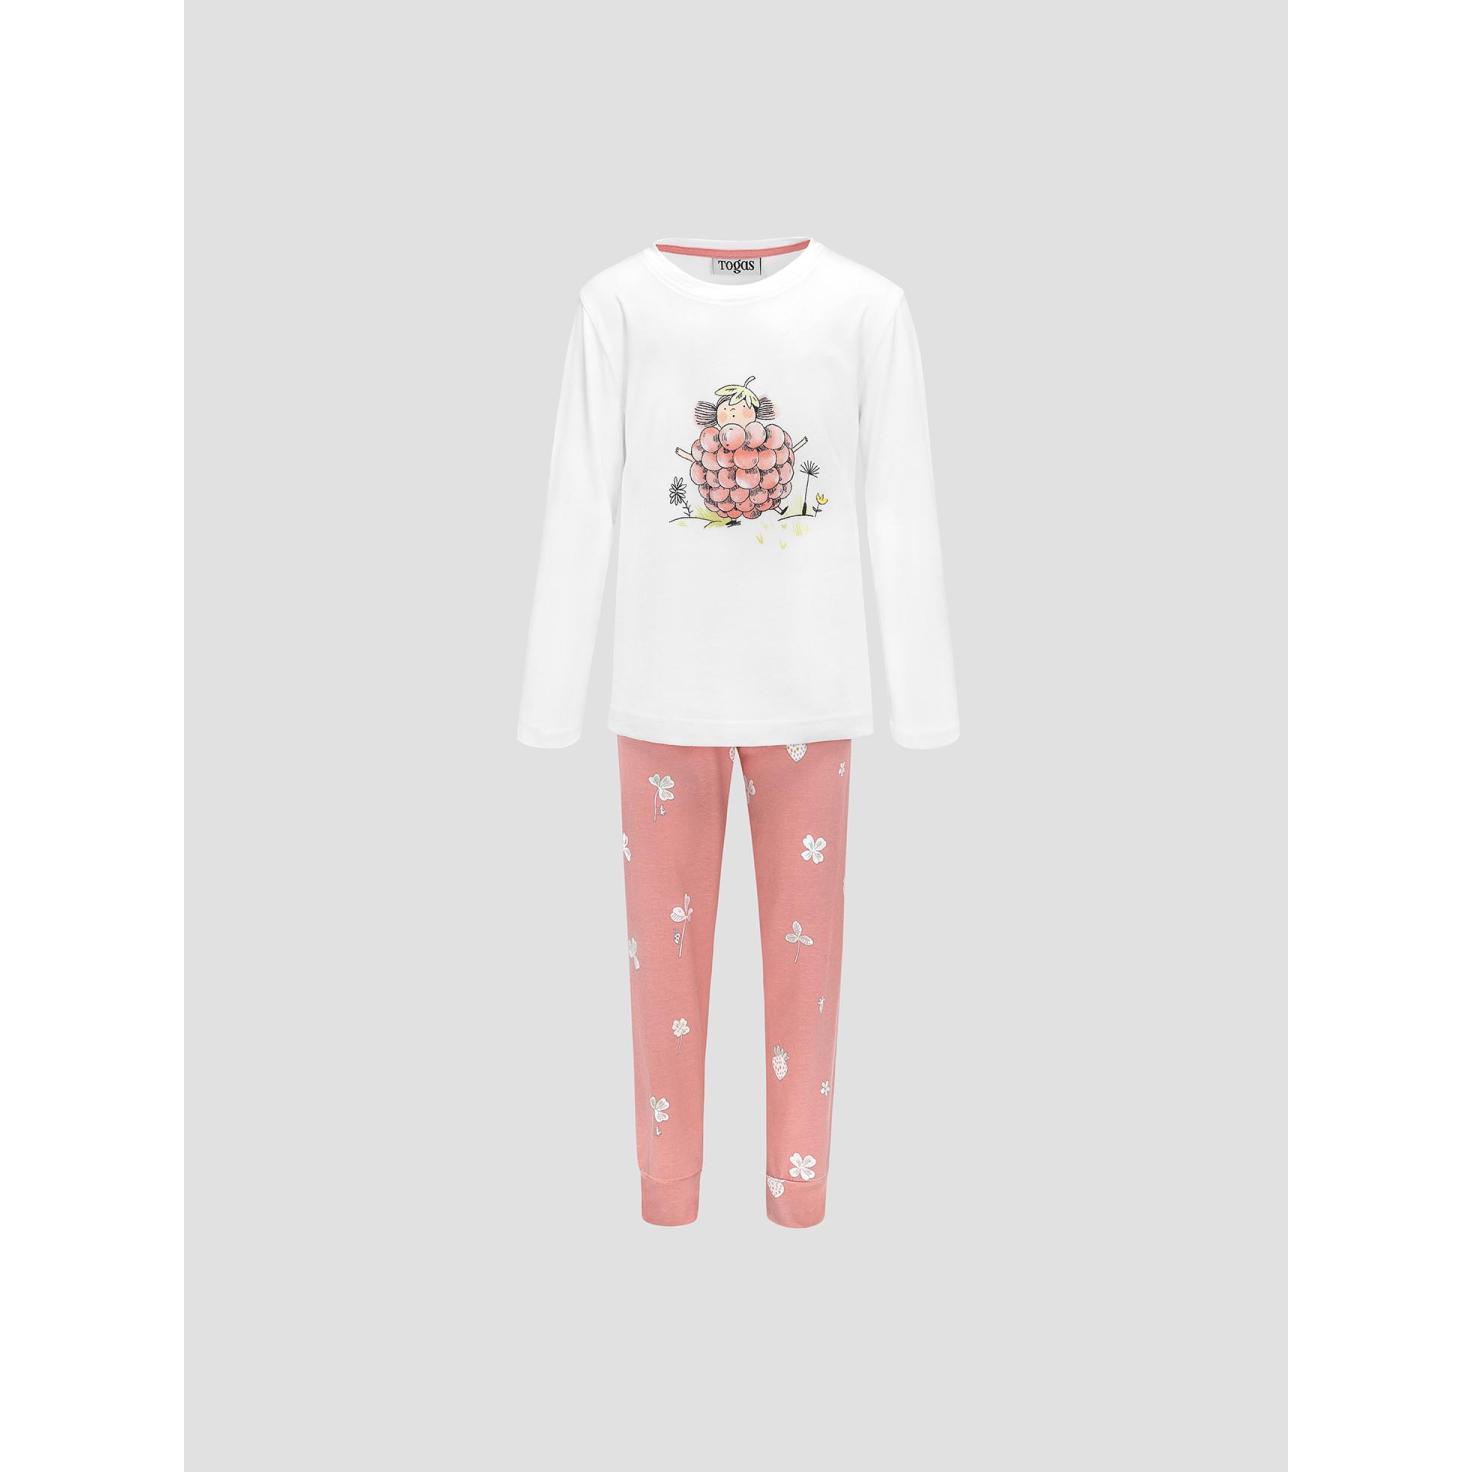 Пижама для девочек Kids by togas Стробби бело-розовый 116-122 см жен пижама с шортами черри белый р 50